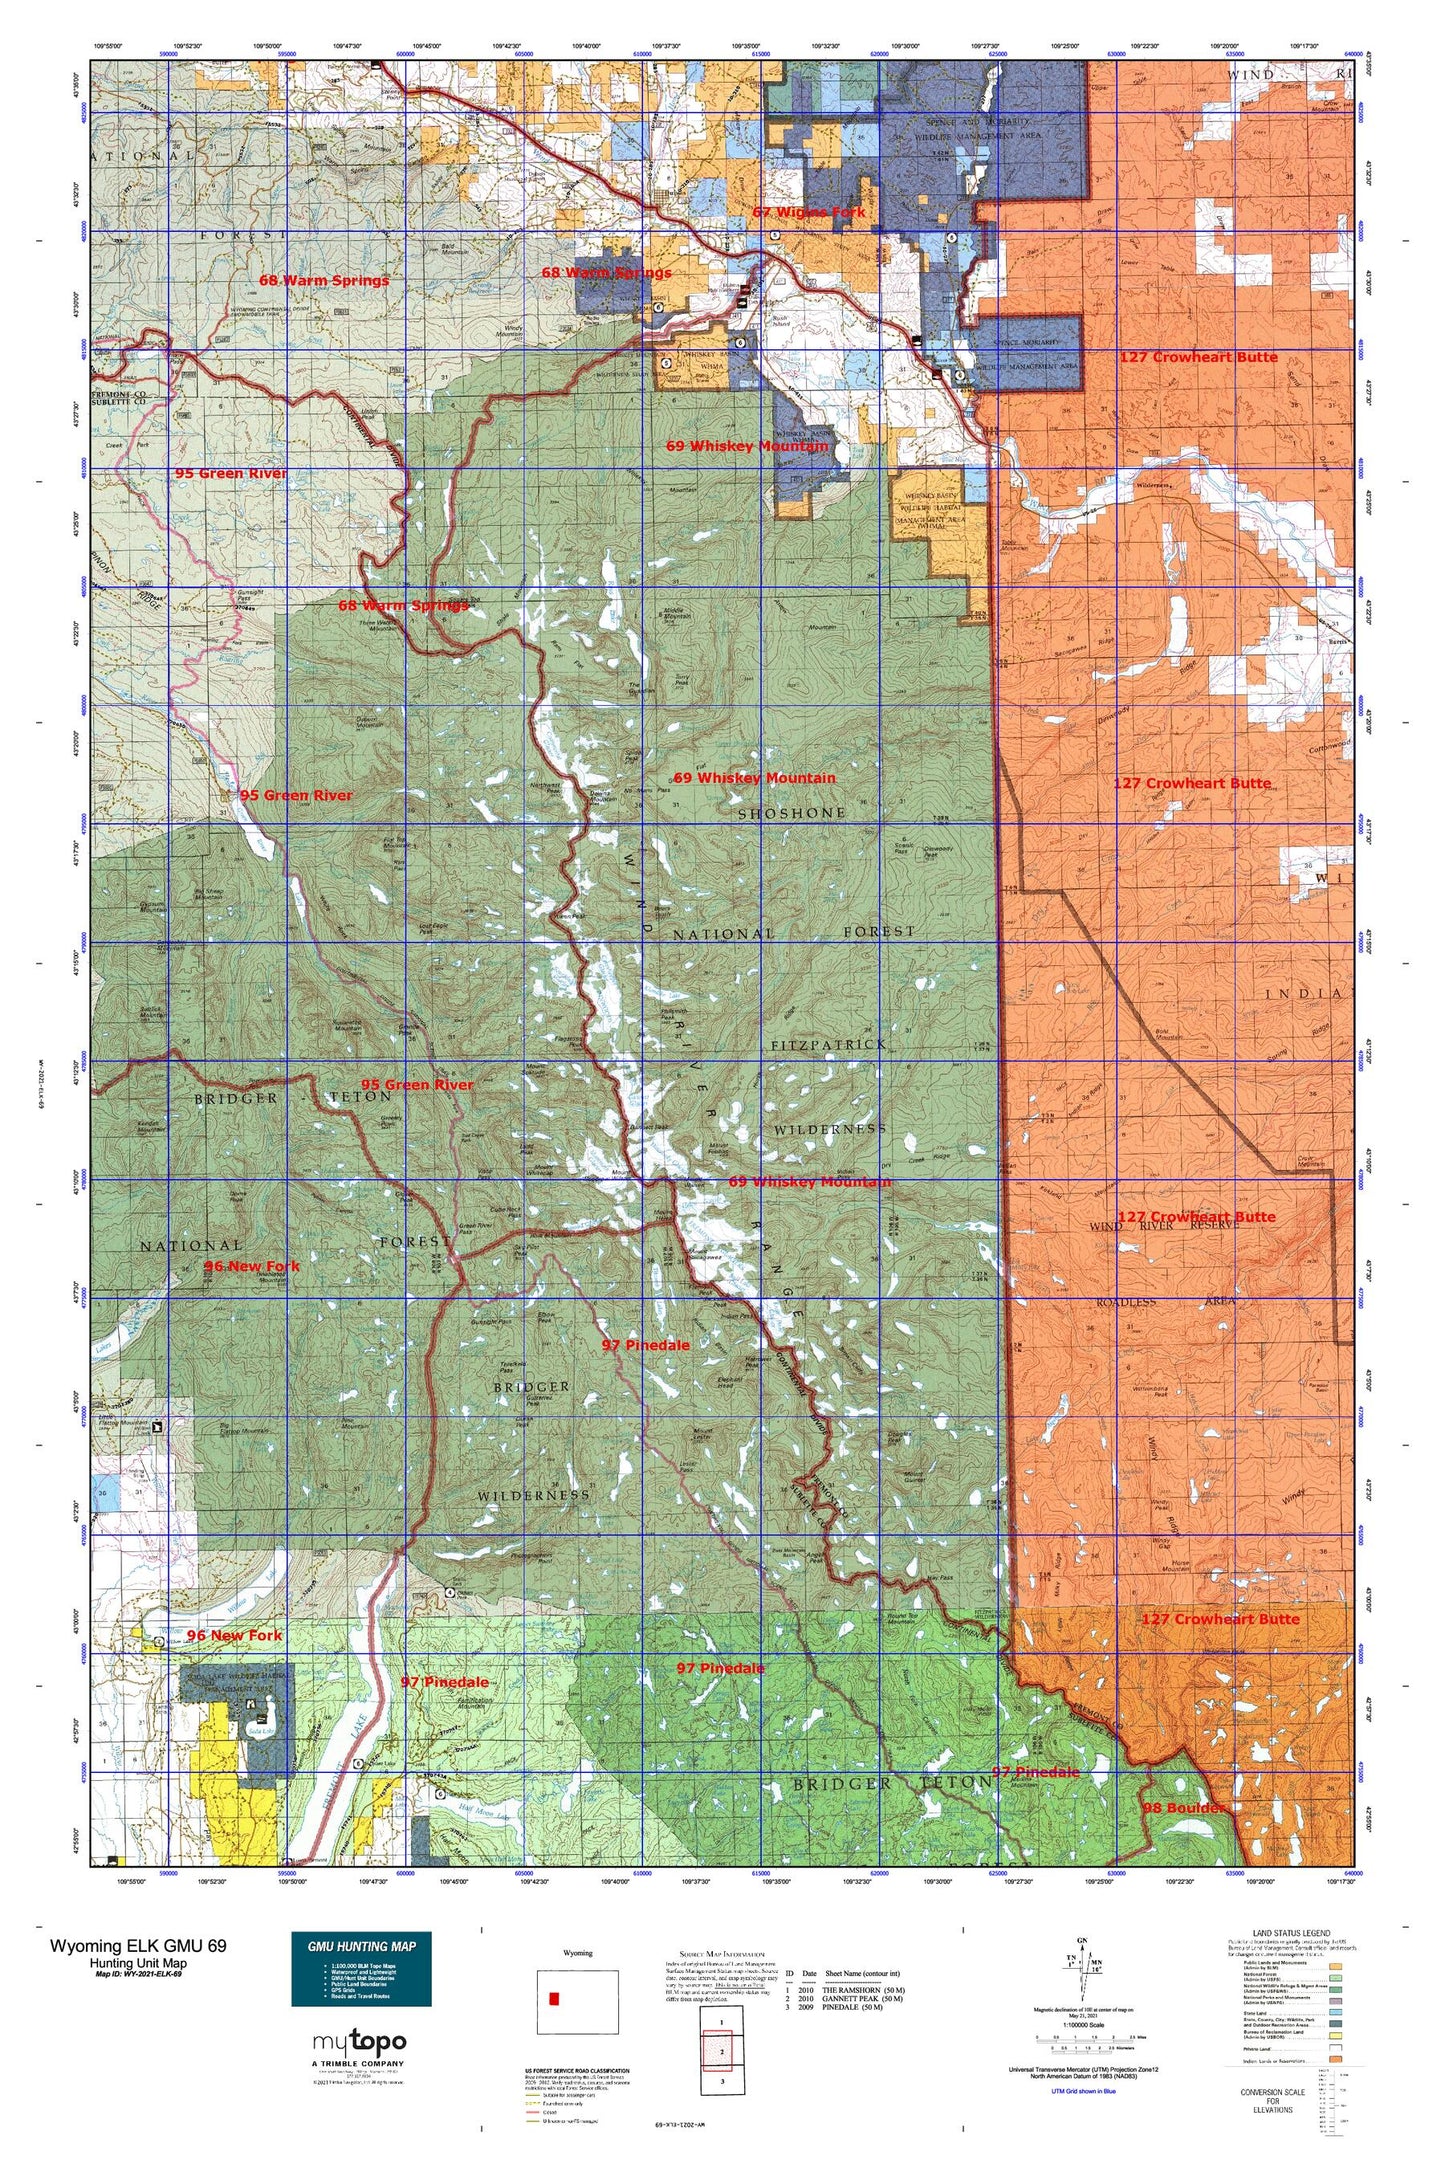 Wyoming Elk GMU 69 Map Image